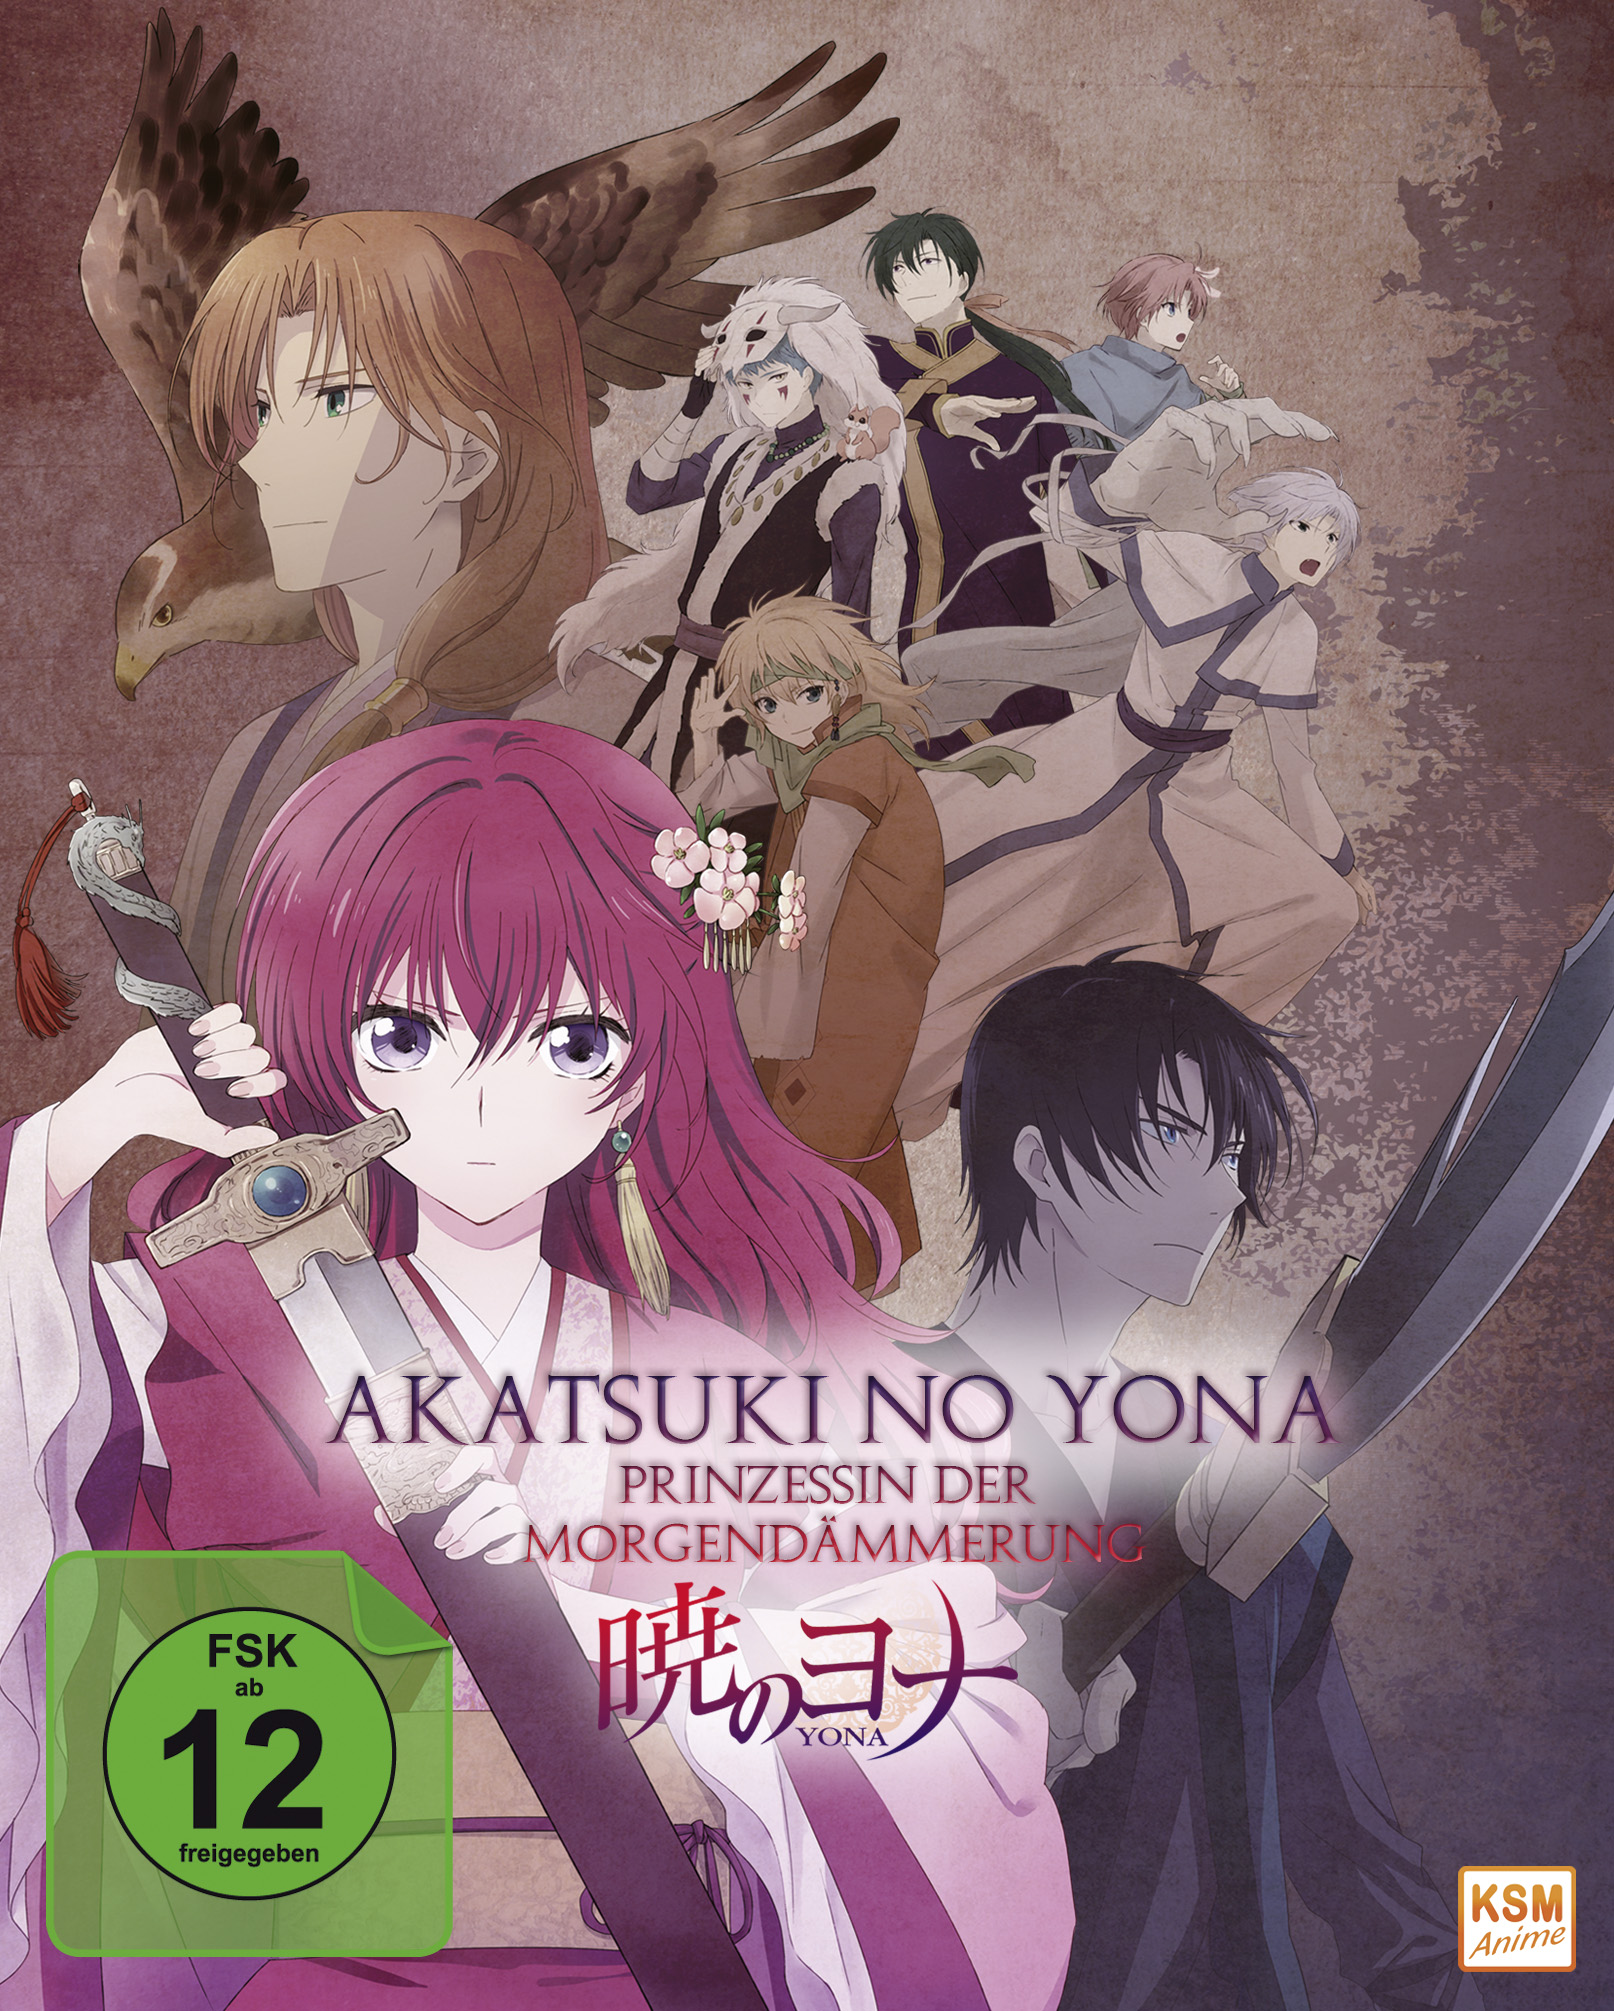 Akatsuki no Yona - Prinzessin der Morgendämmerung - Gesamtedition: Episode 01-24 Blu-ray